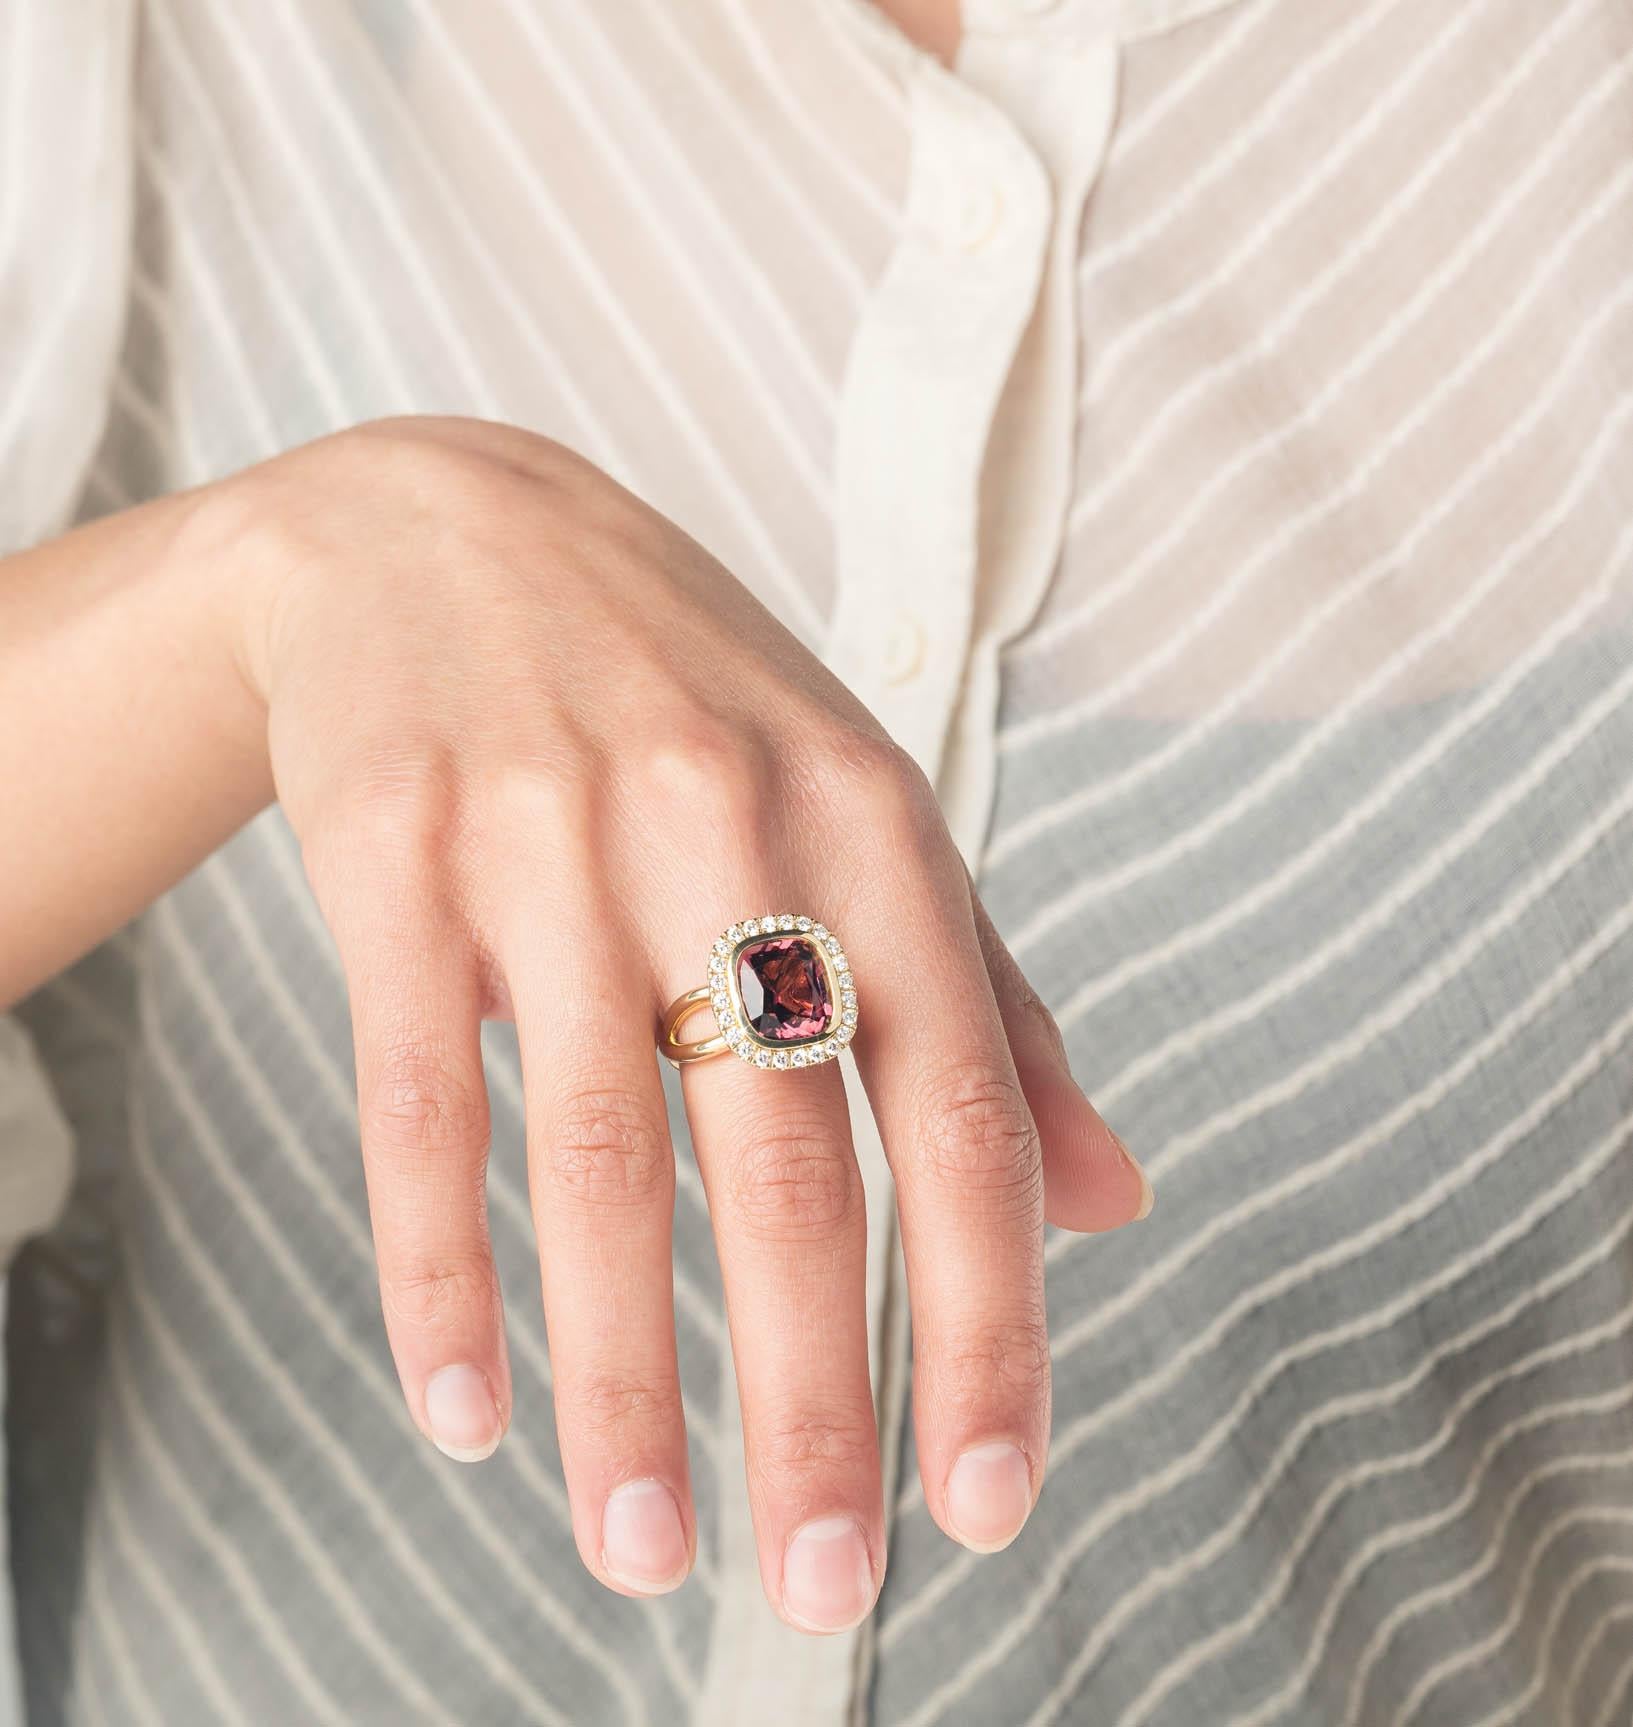 Verspielter rosa Ring mit tiefrosa Turmalin und 24 Diamanten  Cober-Schmuck

Technische Daten:
- Dieser Ring ist meistens auf Lager und direkt verfügbar! Von diesem Ring werden nur wenige Exemplare hergestellt. Das macht diesen Ring zu einem ganz